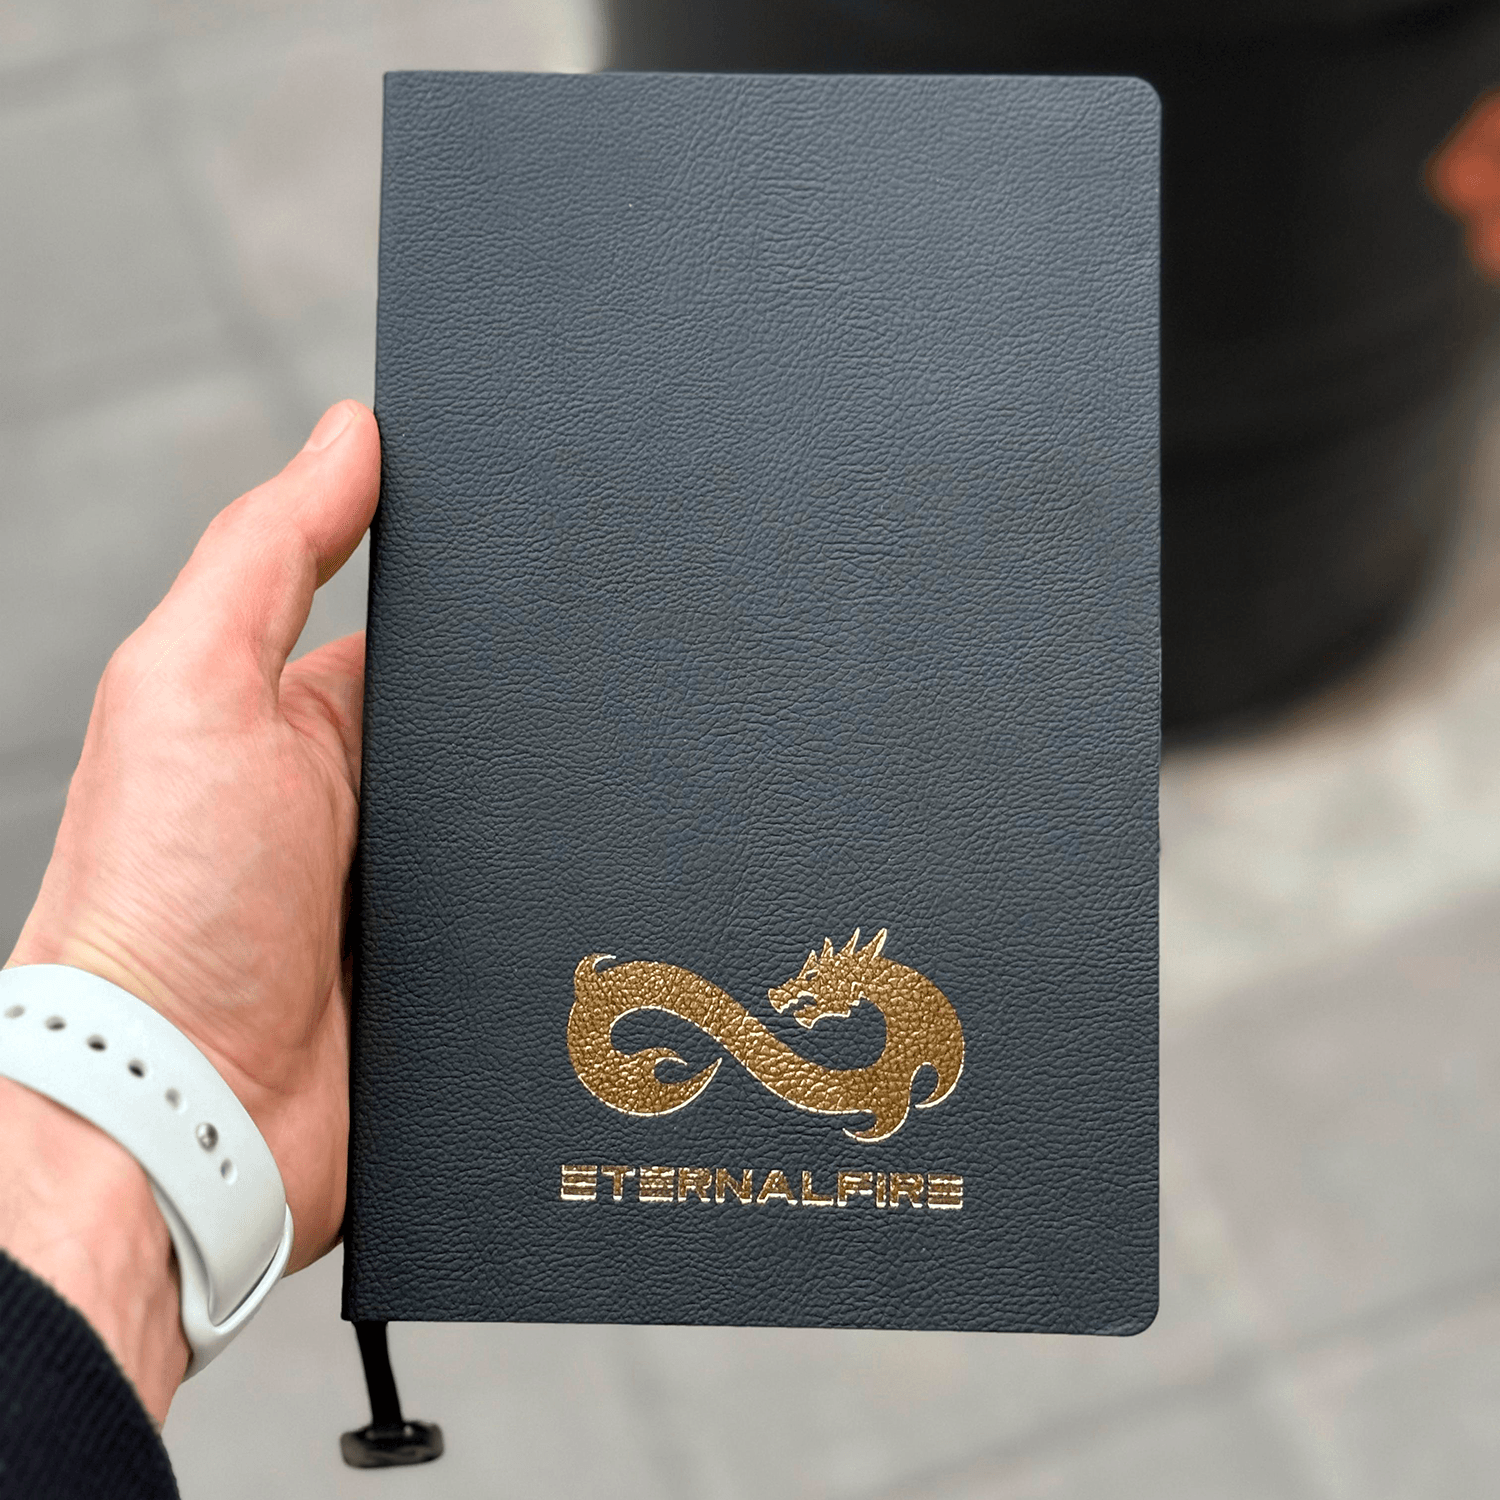 Eternal Fire Gold Detail Notebook Pen Set